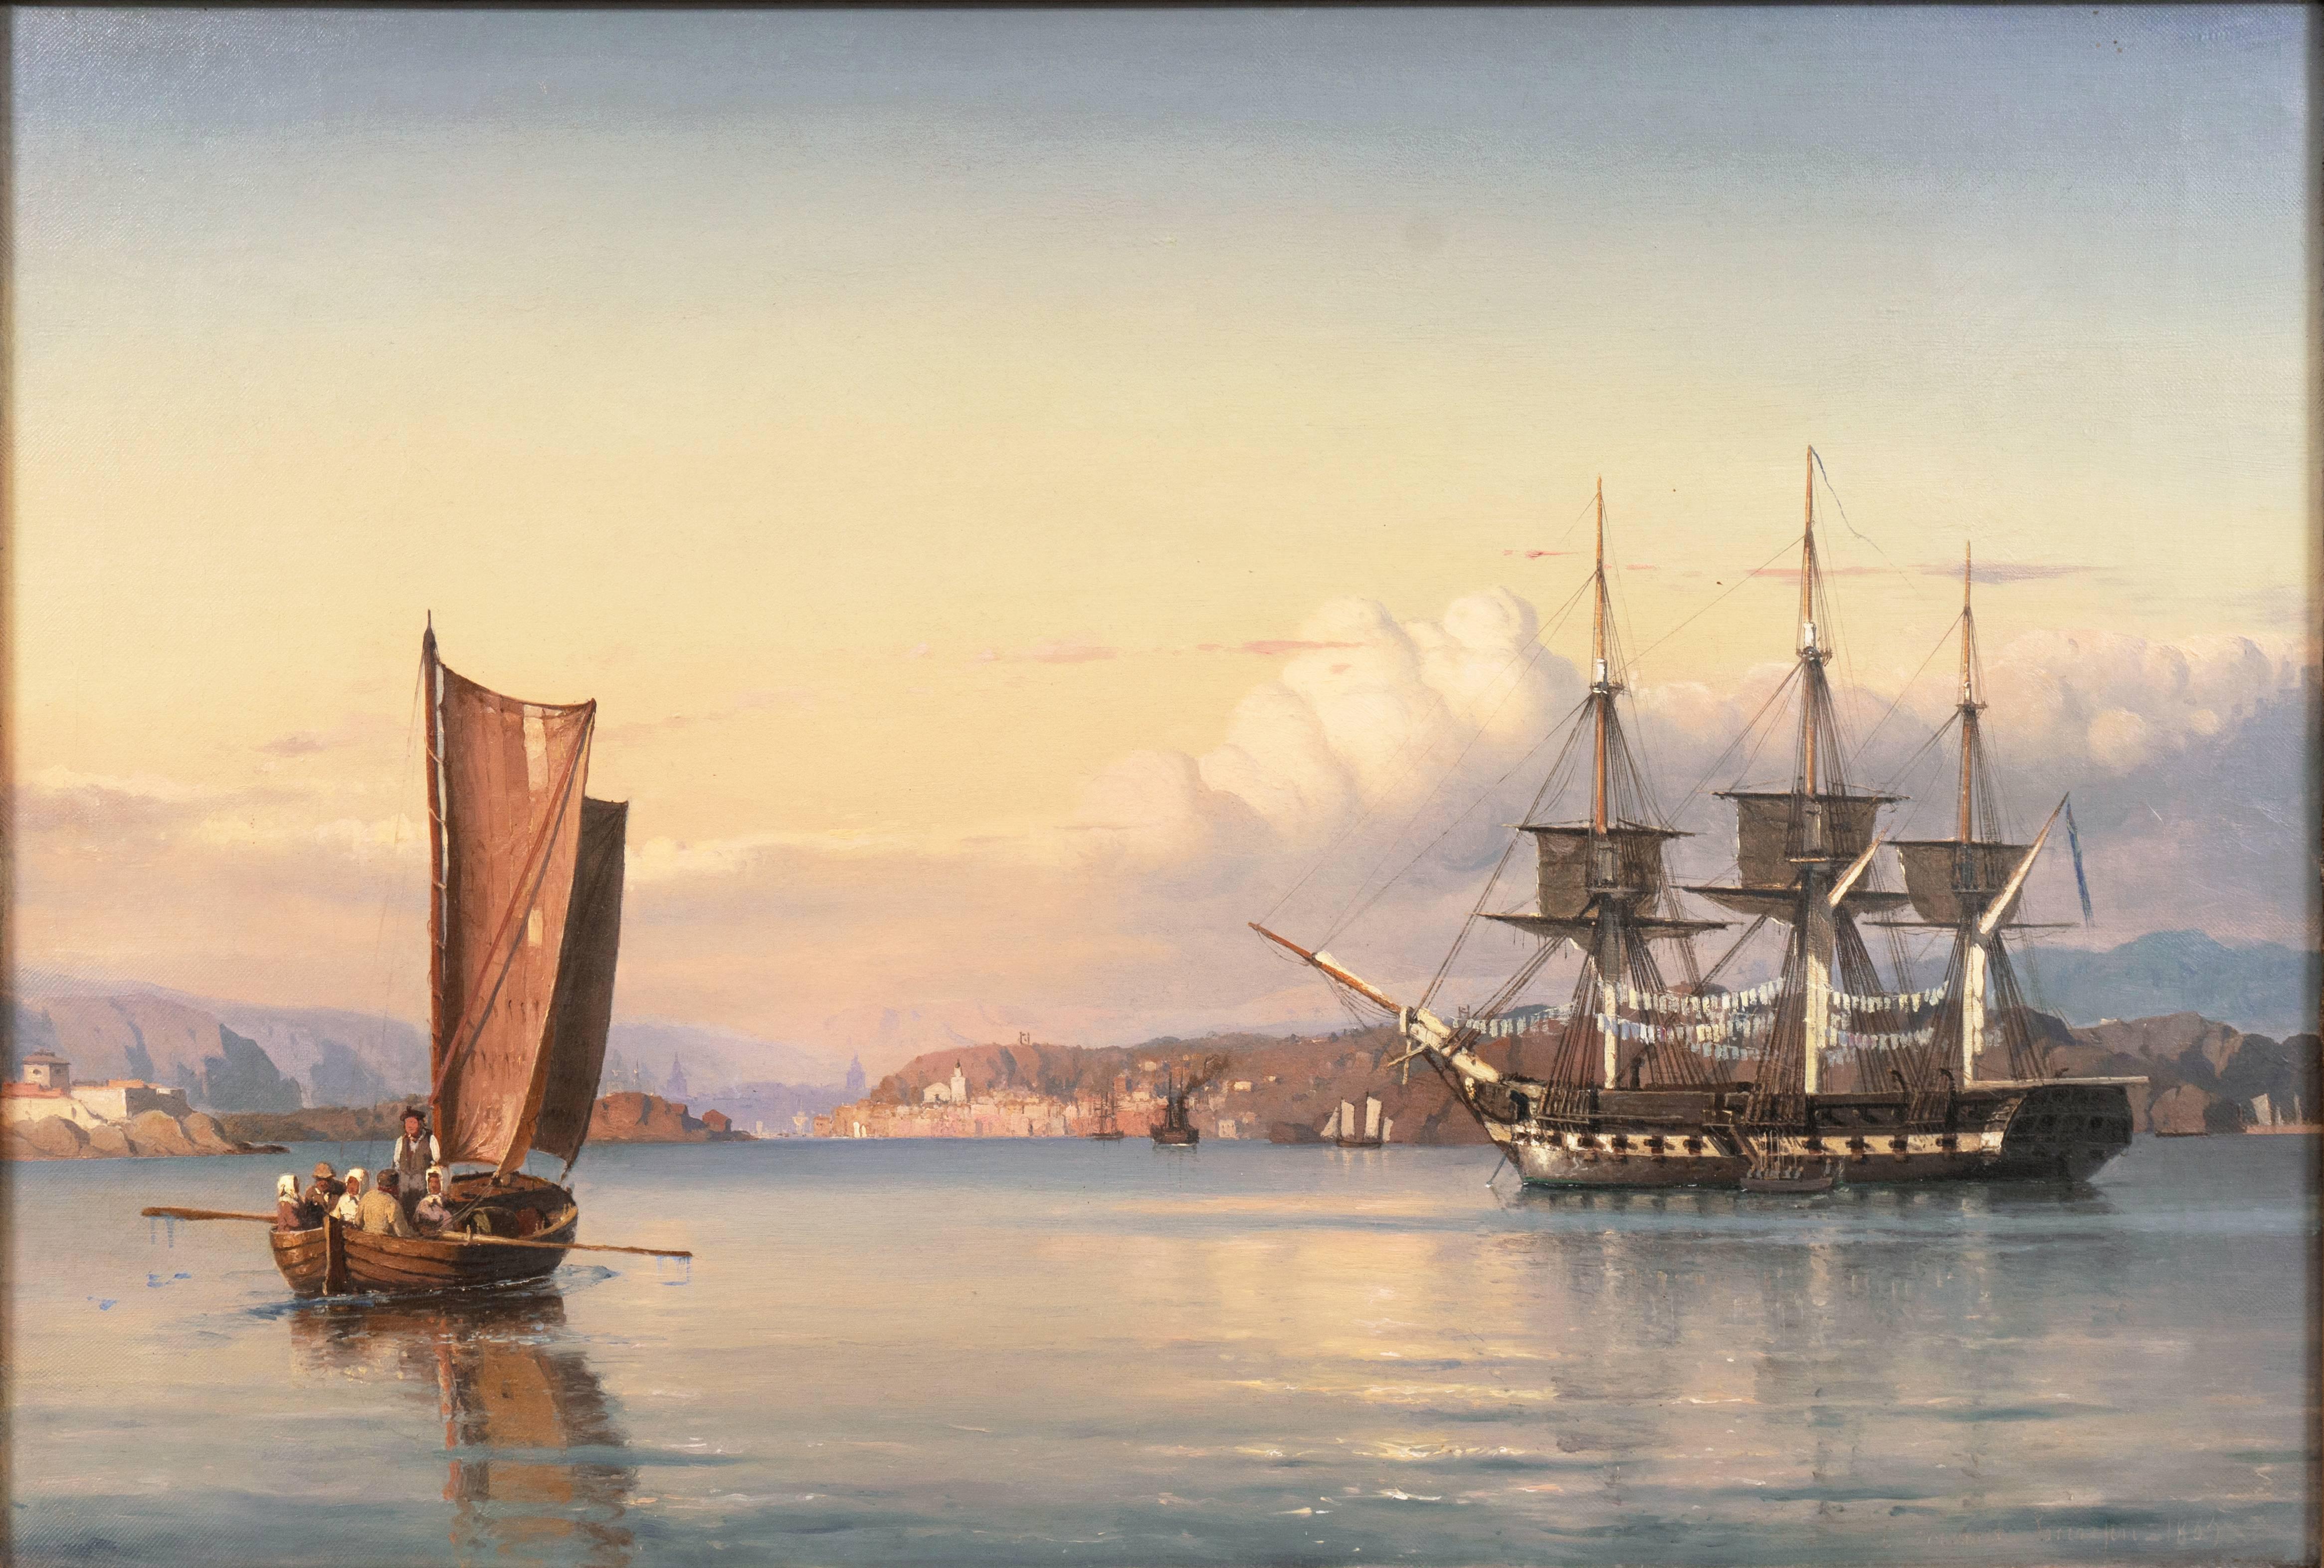 Landscape Painting Carl Frederik Sørensen - « Une flèche à trois mâts au large de Capri », paysage marin du 19e siècle, Musée royal de la marine  